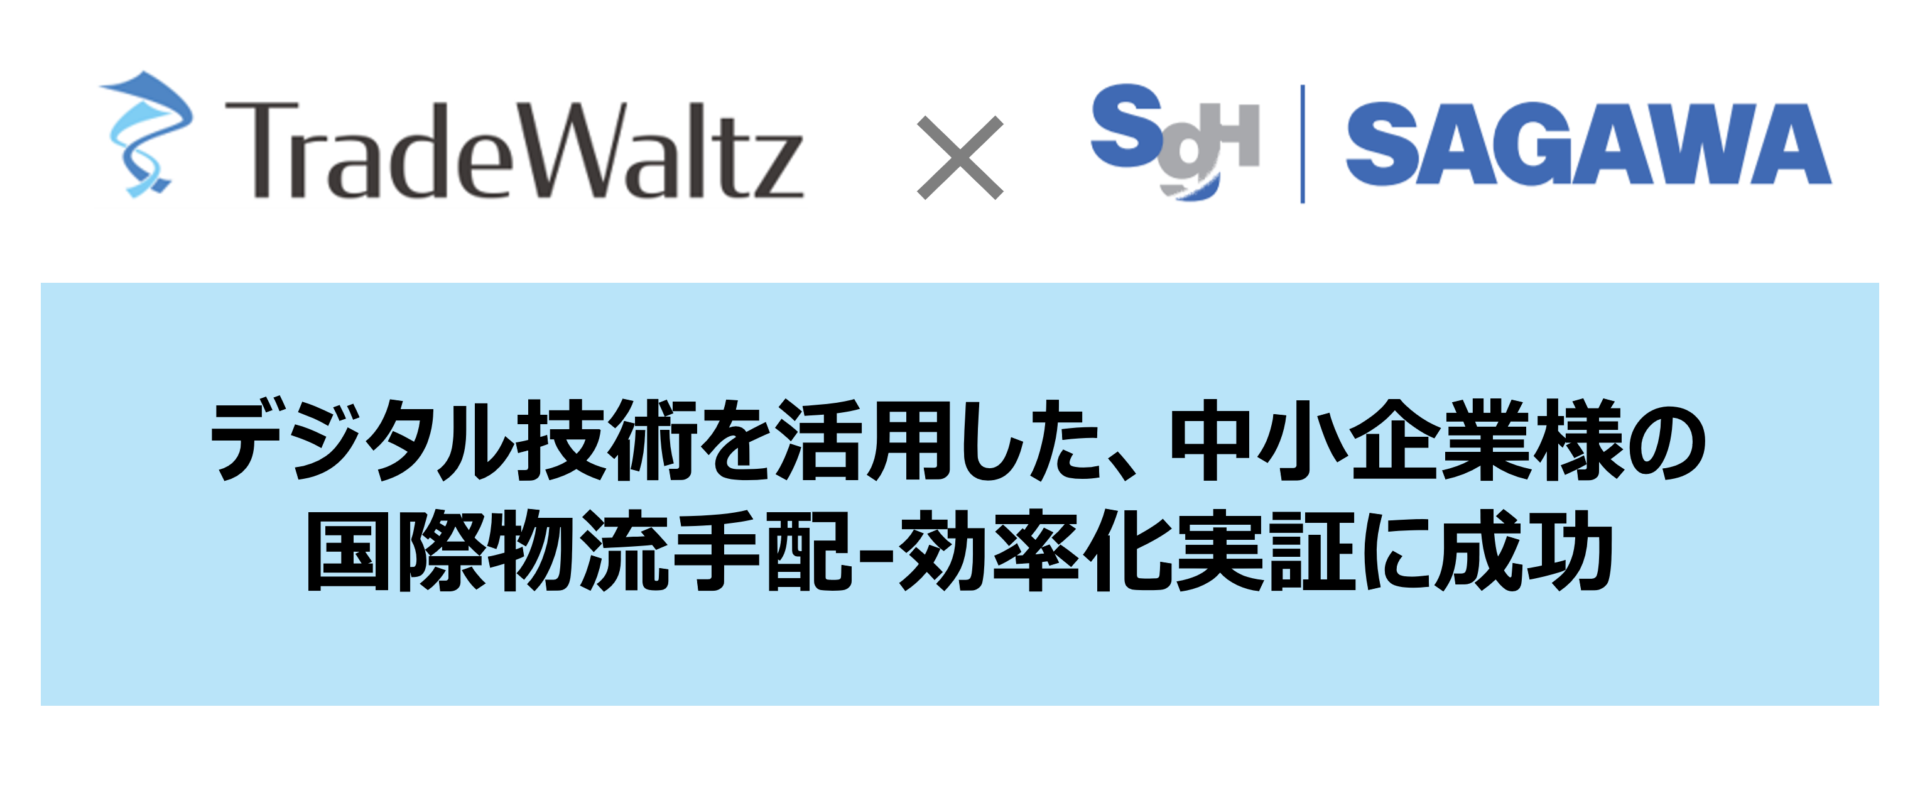 貿易DXを推進するトレードワルツが佐川急便の「SAGAWA ACCELERATOR PROGRAM第二期」で実証成功し、最優秀賞受賞